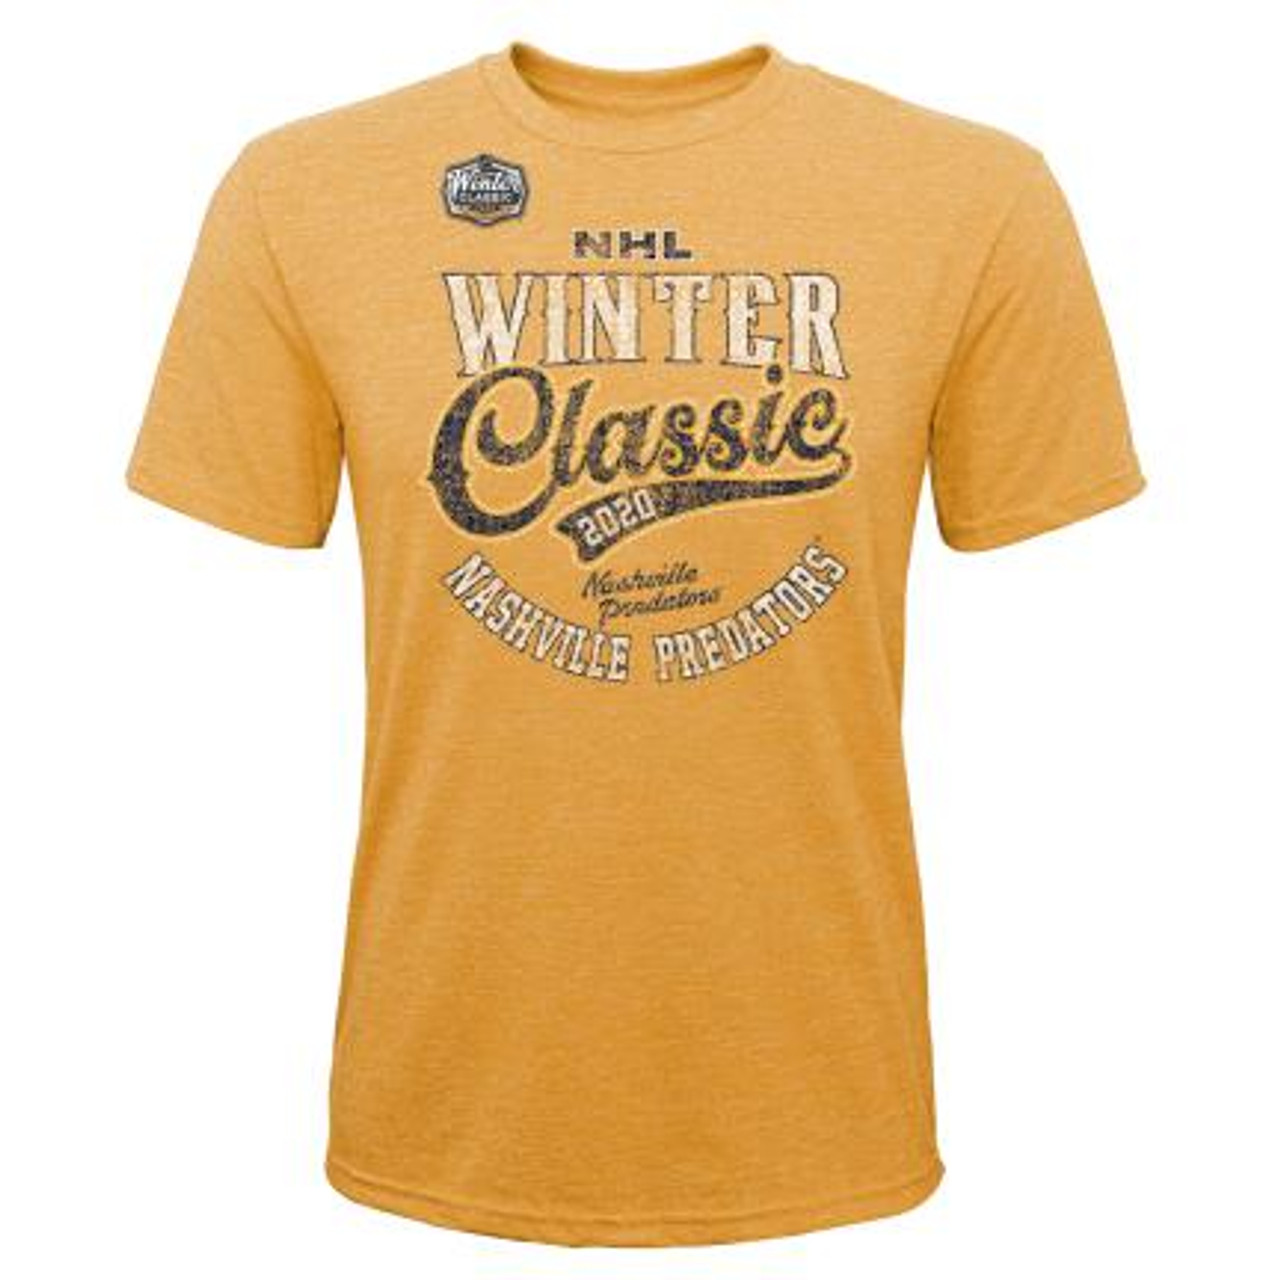 Nashville Predators Winter Classic Concept Uniform by Alec Des